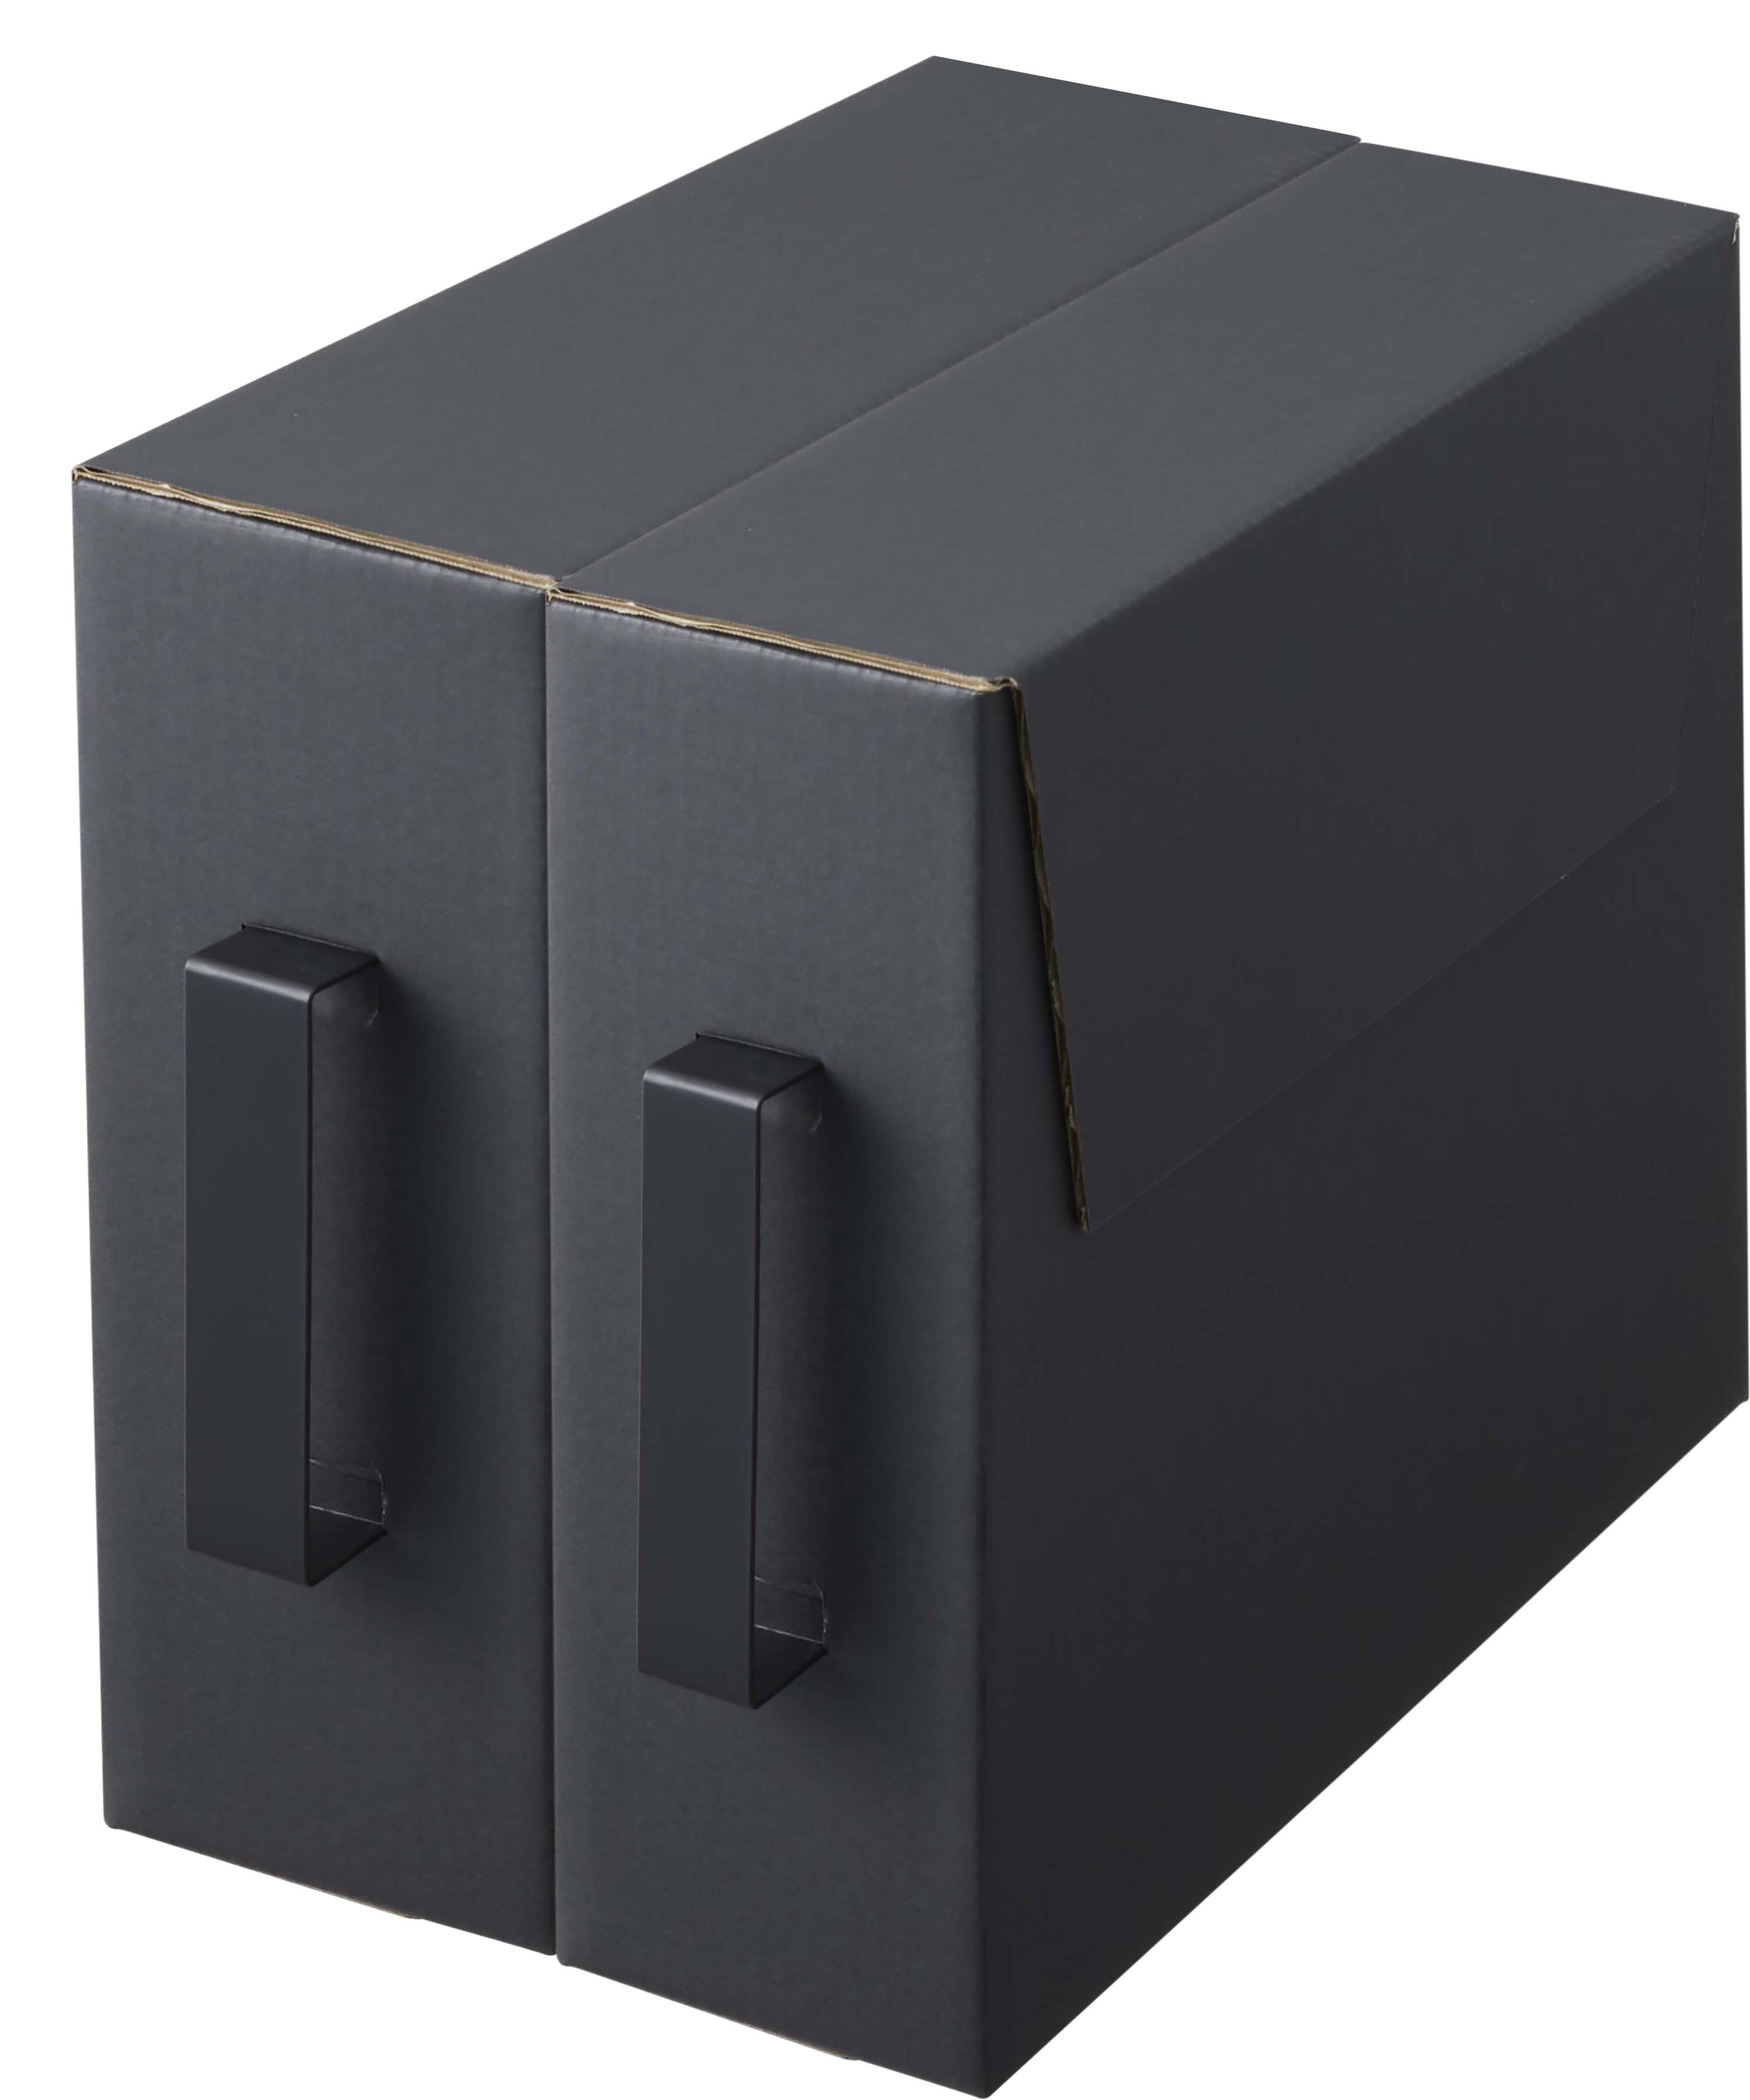 カセットコンロ収納ボックス タワー 2個組 ブラック | Giftpad egift